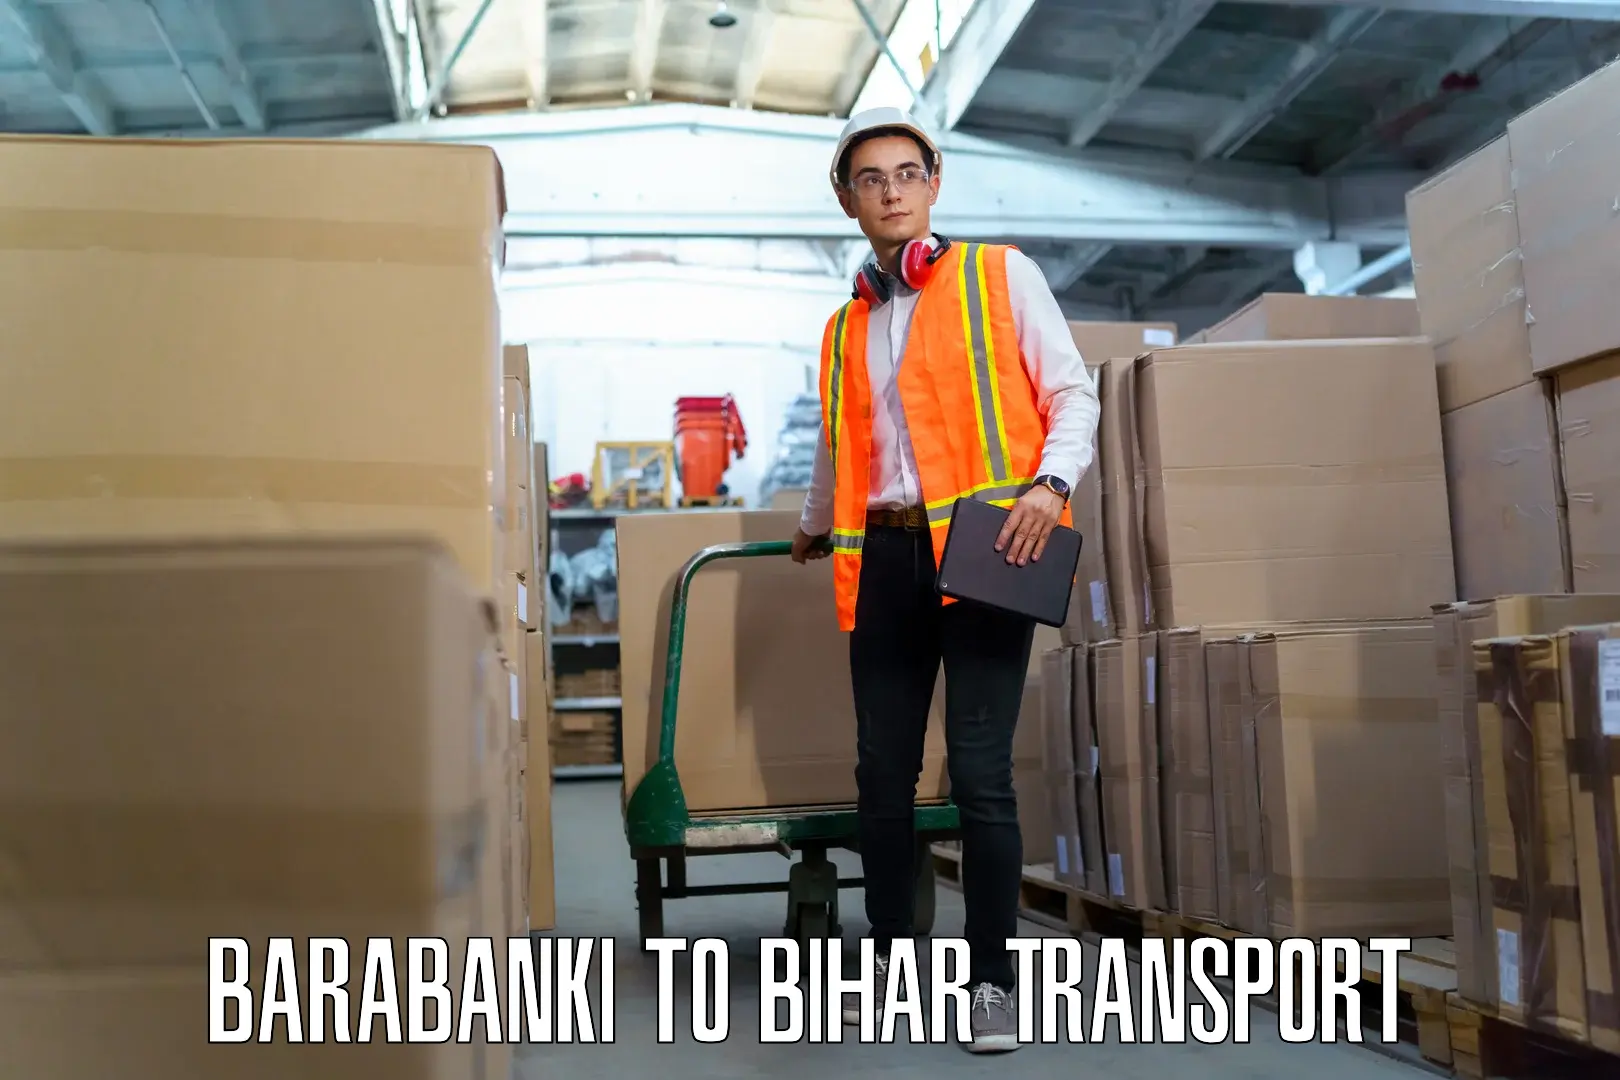 Shipping partner Barabanki to Barbigha